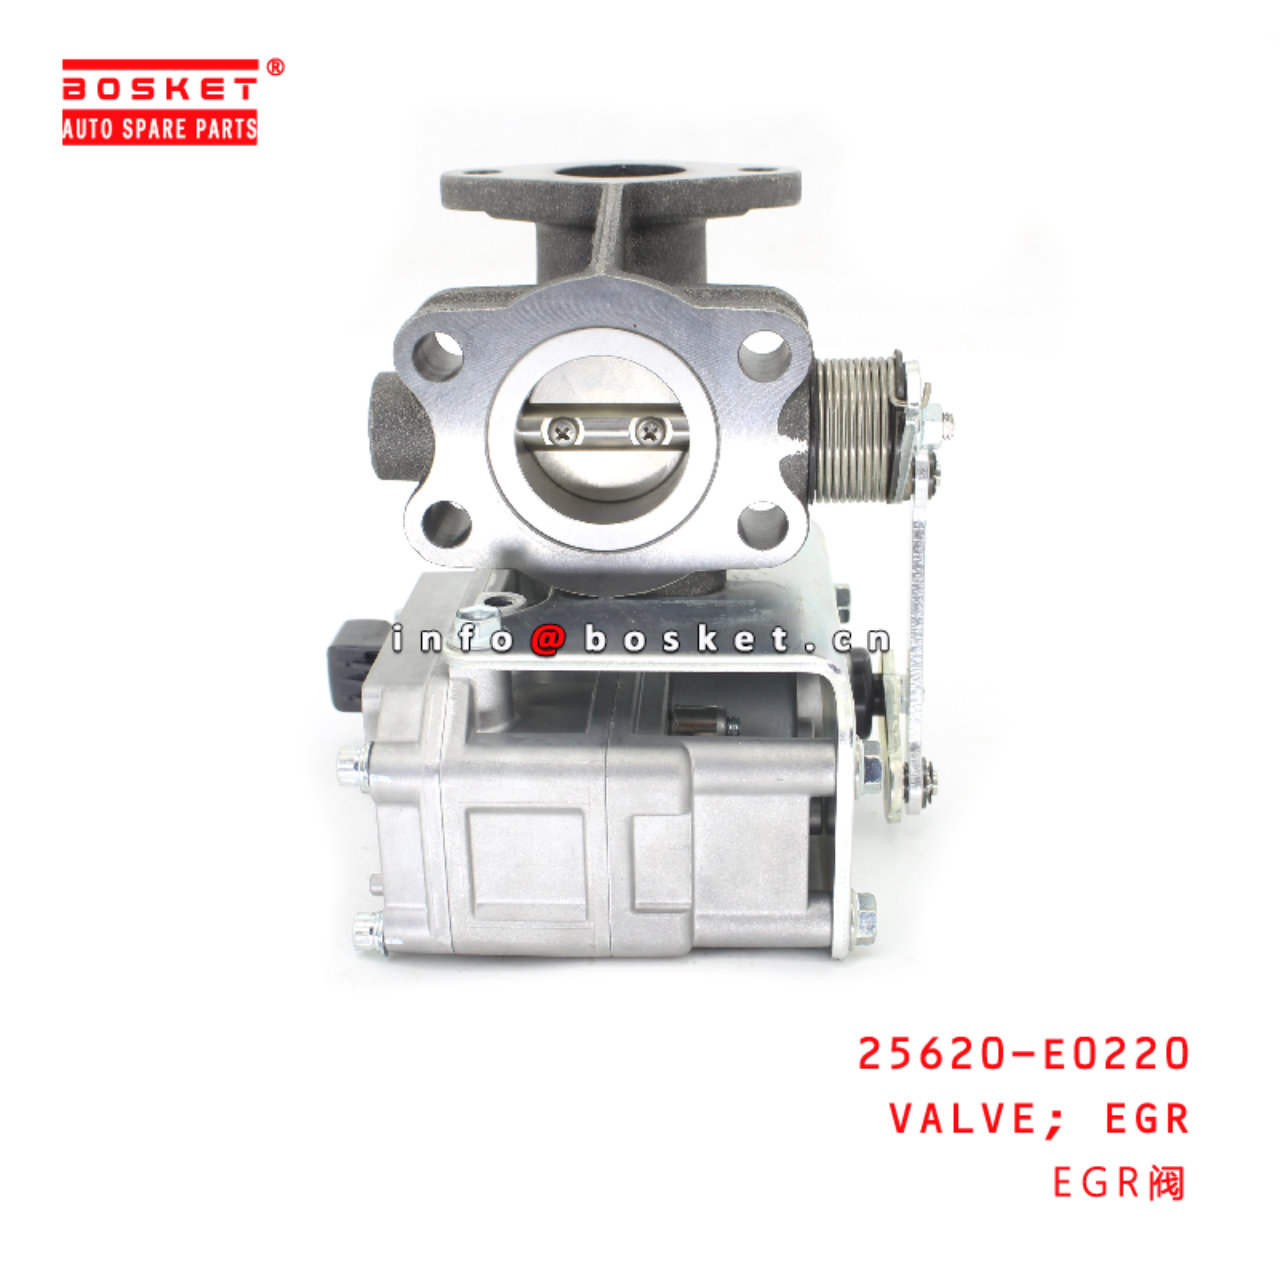 25620-E0220 EGR VALVE suitable for ISUZU HINO P11C